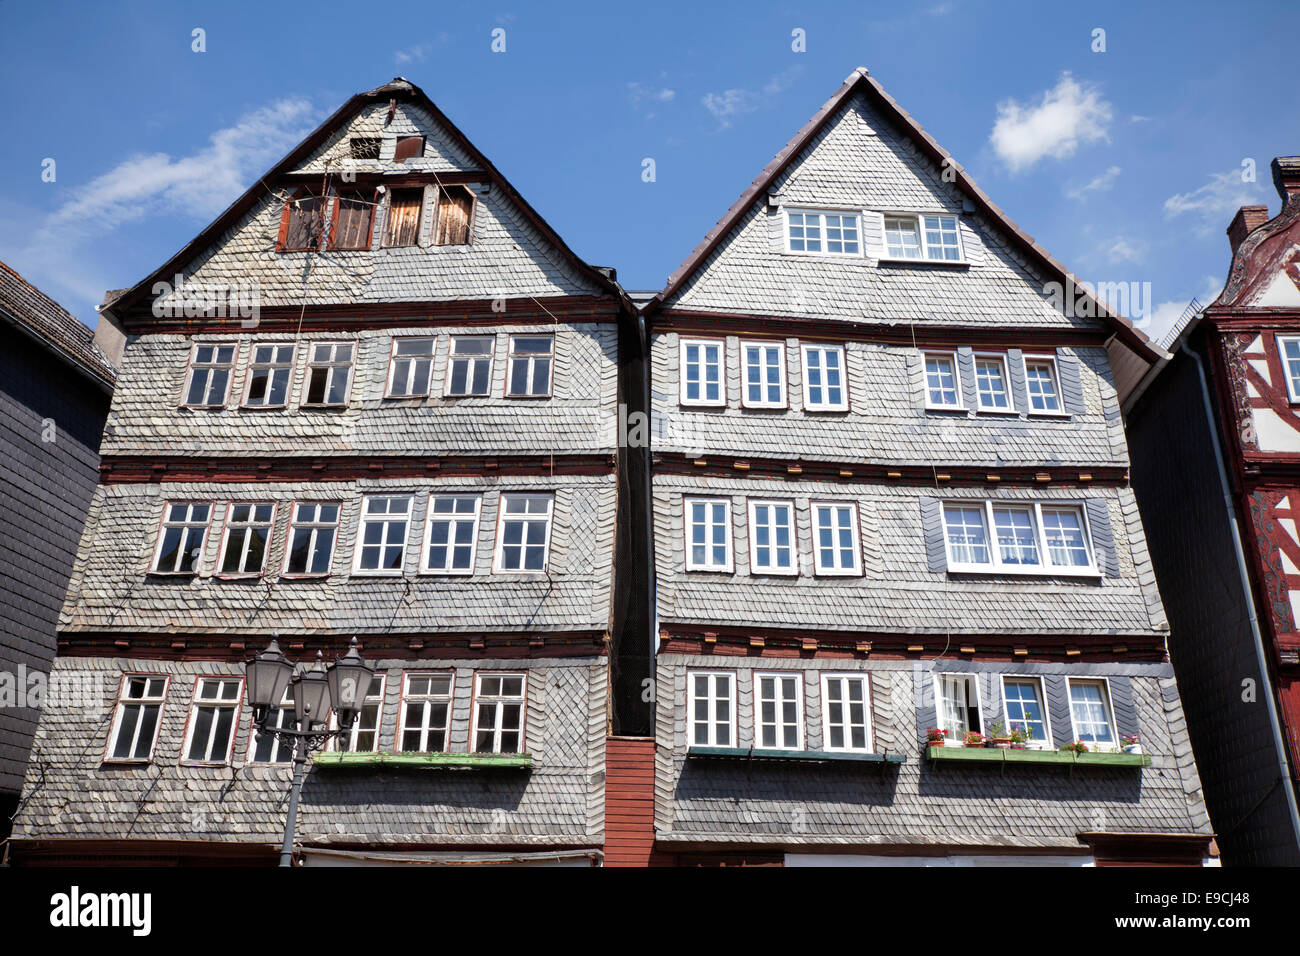 Restauré et pas encore maisons restaurées, marché des céréales, Kornmarkt vieille ville historique de Herborn, Hesse, Germany, Europe, Banque D'Images